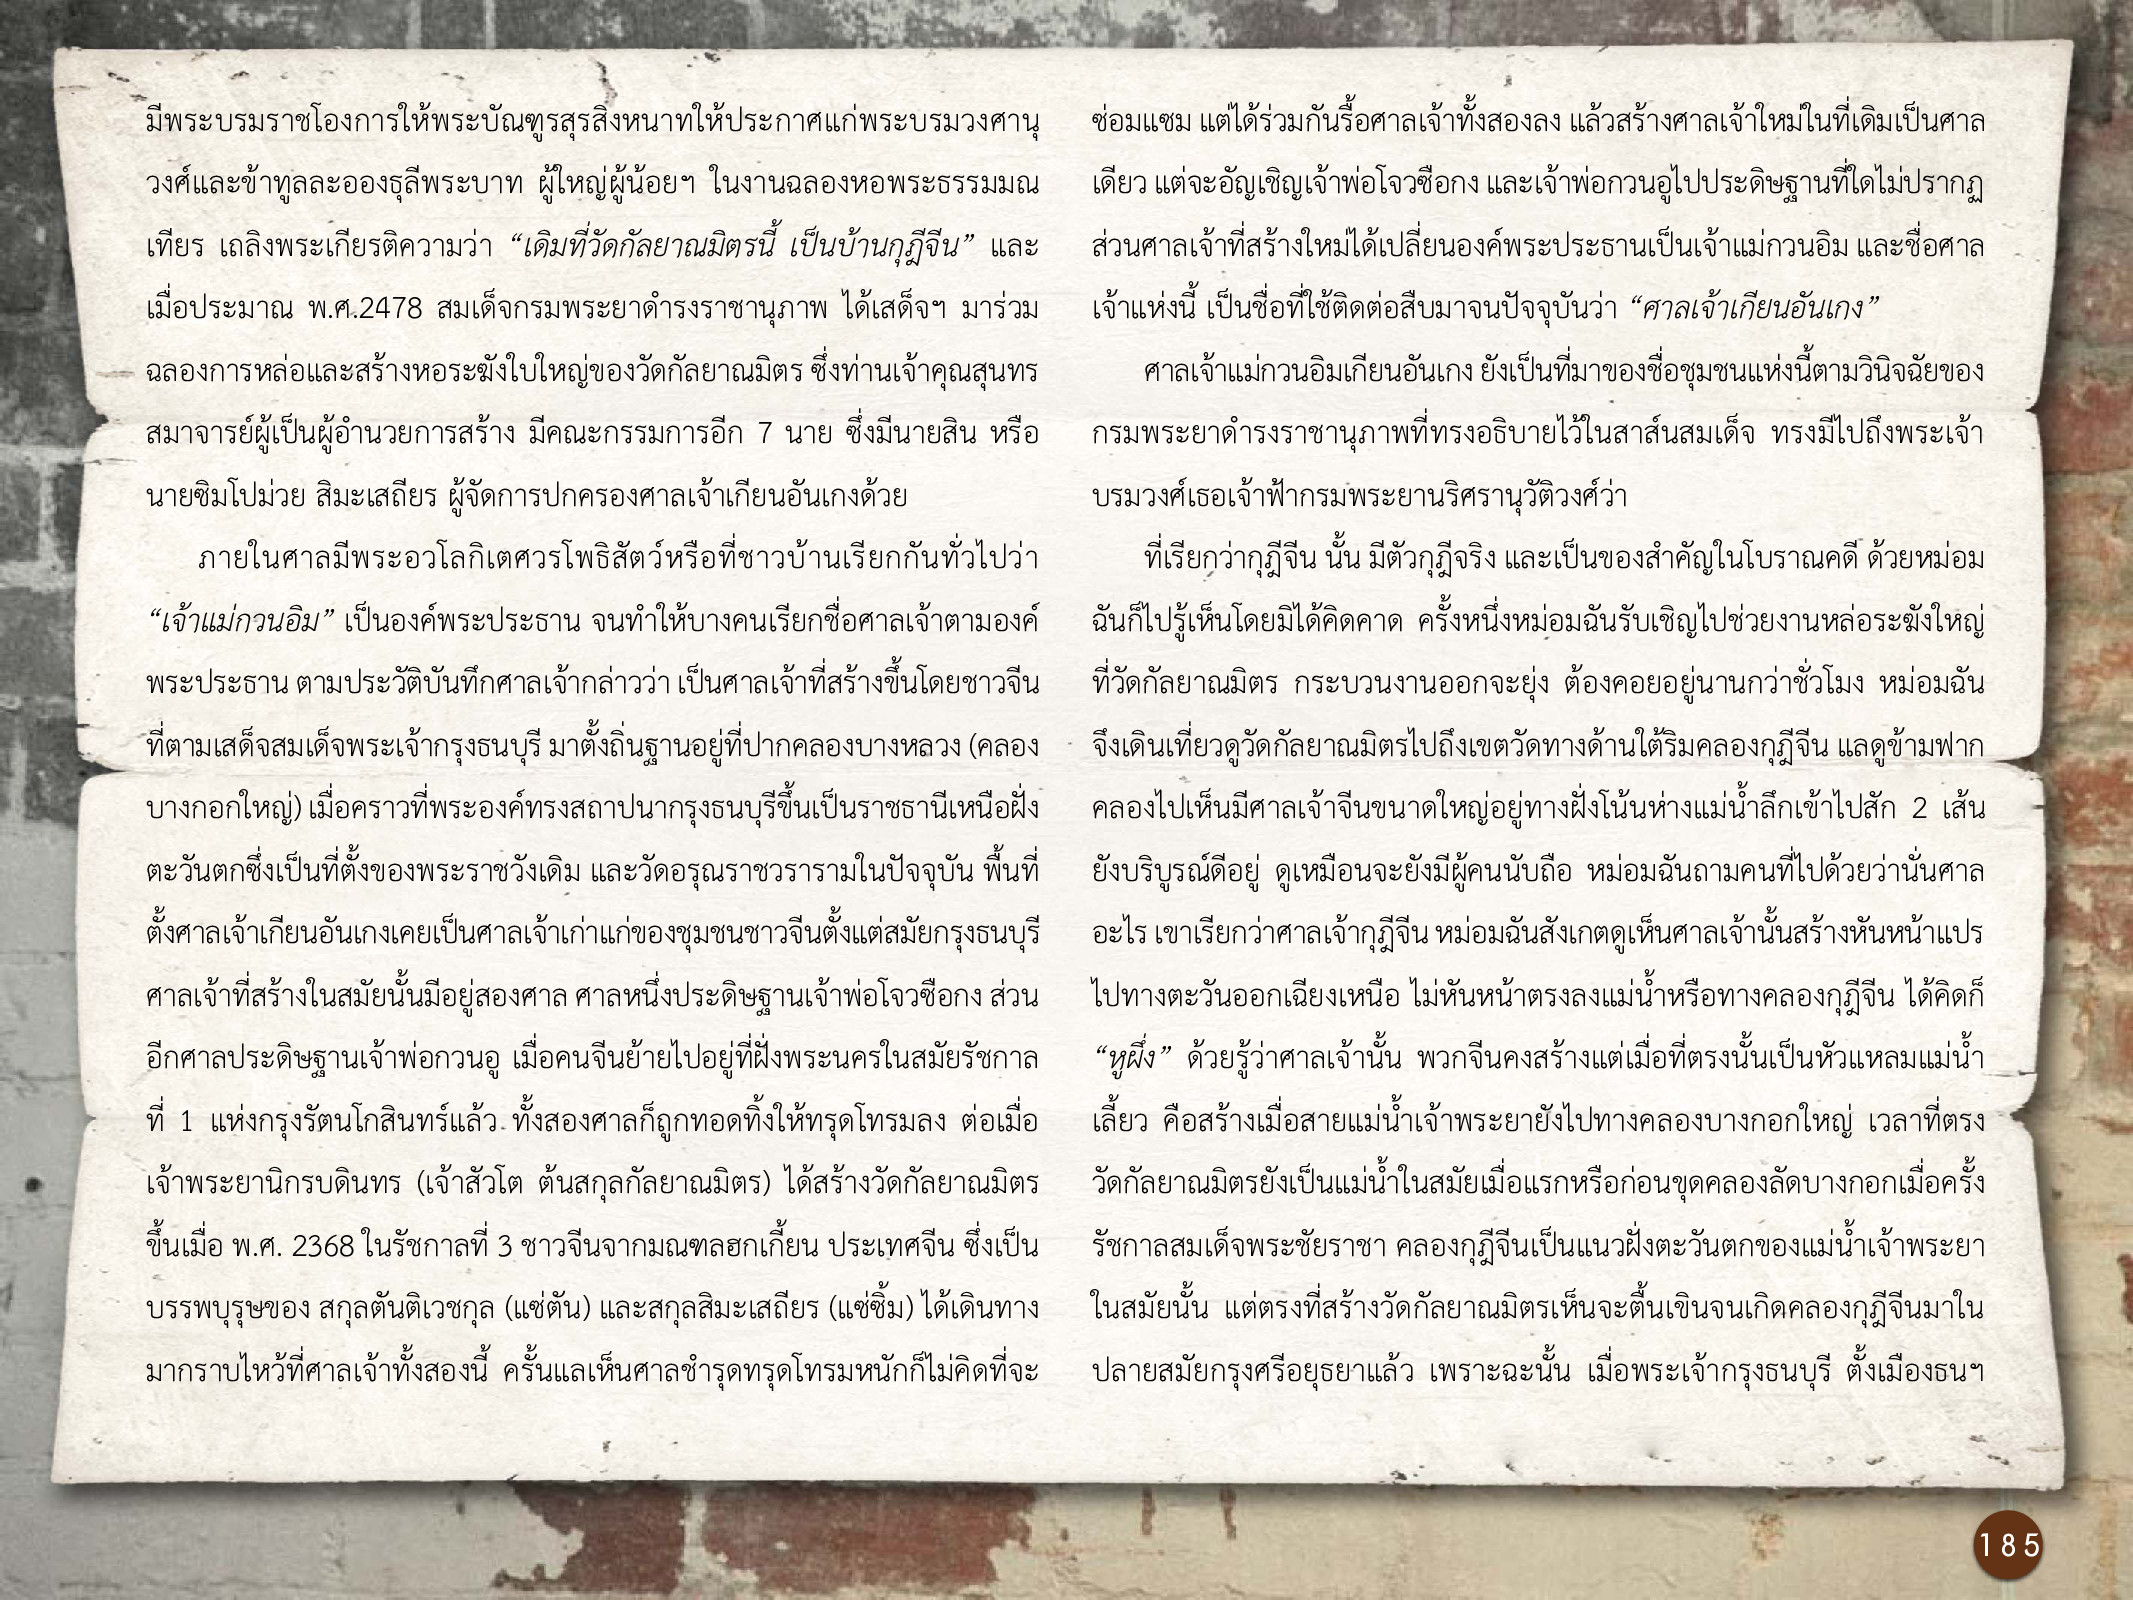 ศิลปกรรมกรุงธนบุรี ./images/encyclopedia/185.jpg